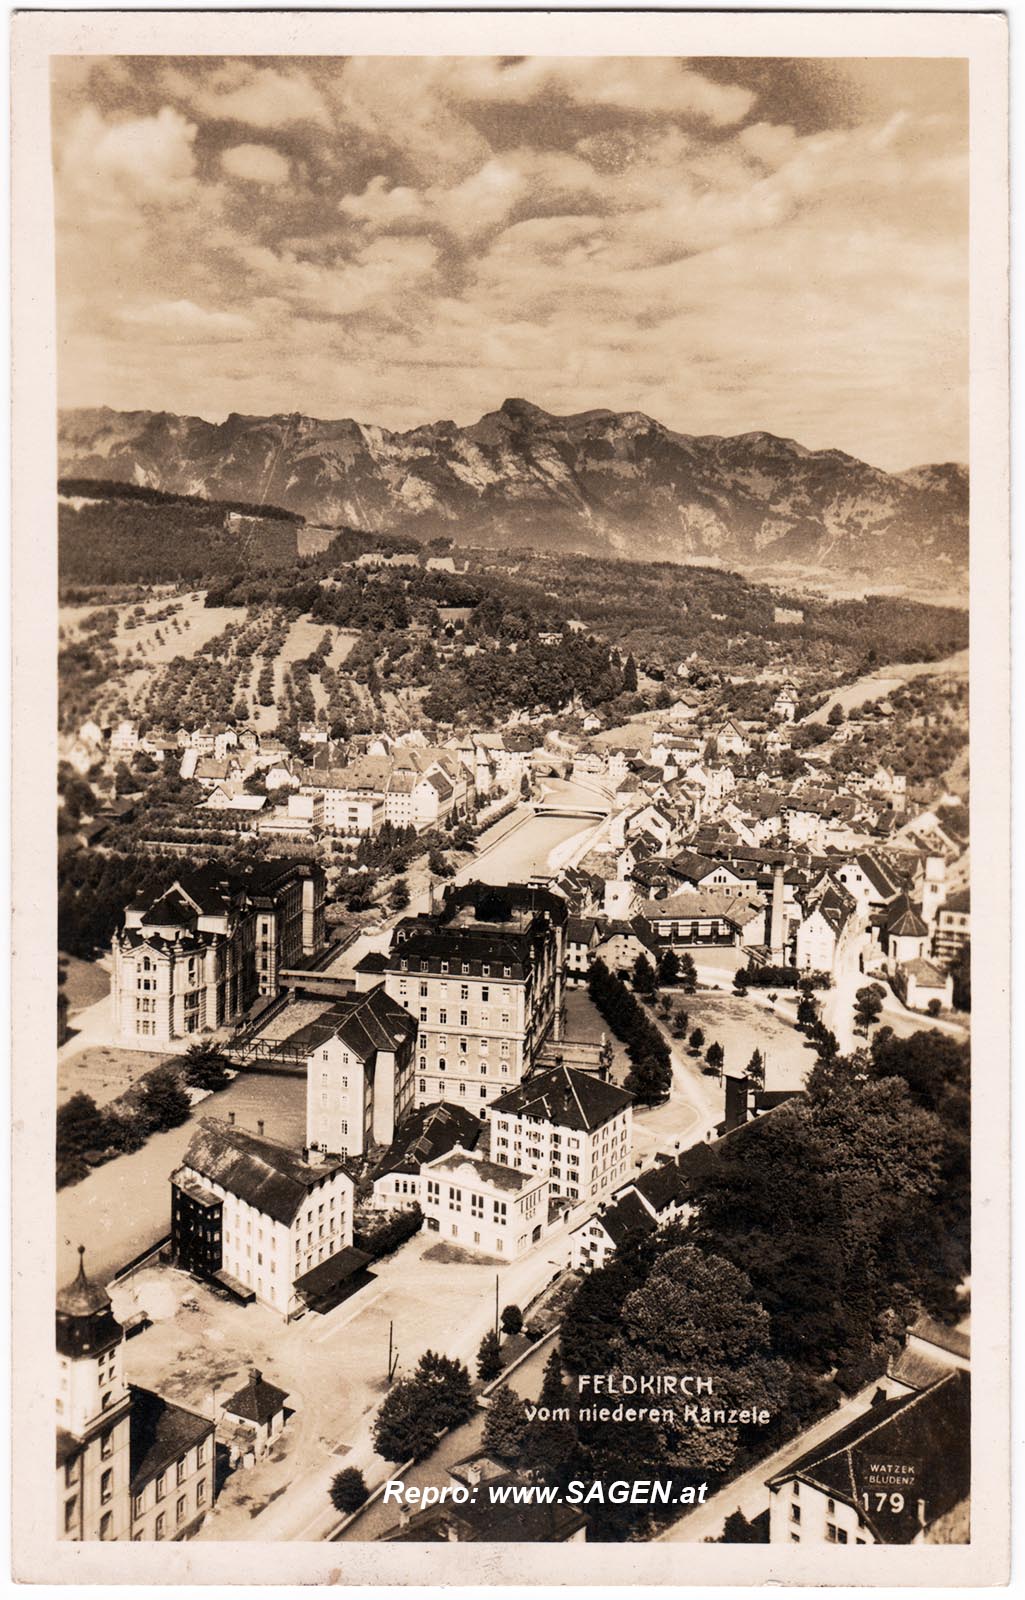 Feldkirch vom niederen Känzele